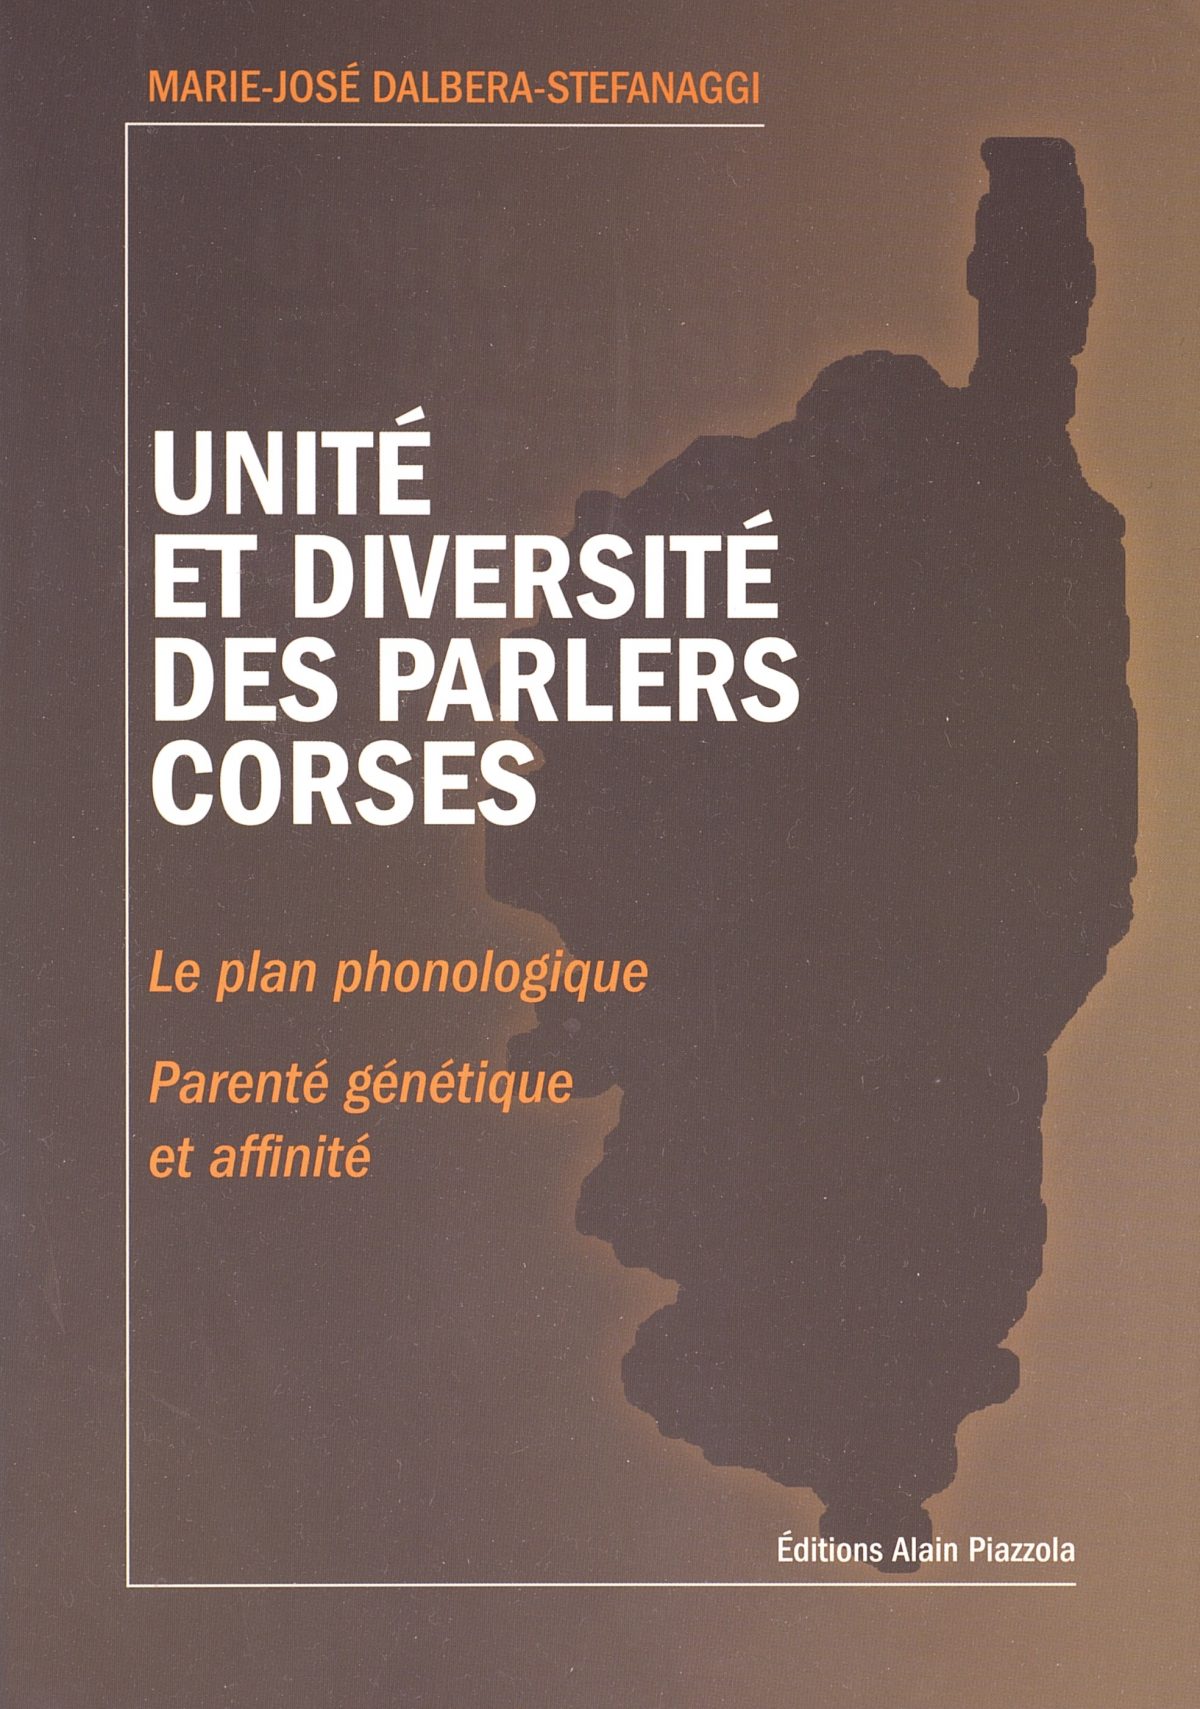 Unité et diversité des parlers corses : le plan phonologique. Parenté génétique et affinité, Ajaccio : Alain Piazzola, 2015.